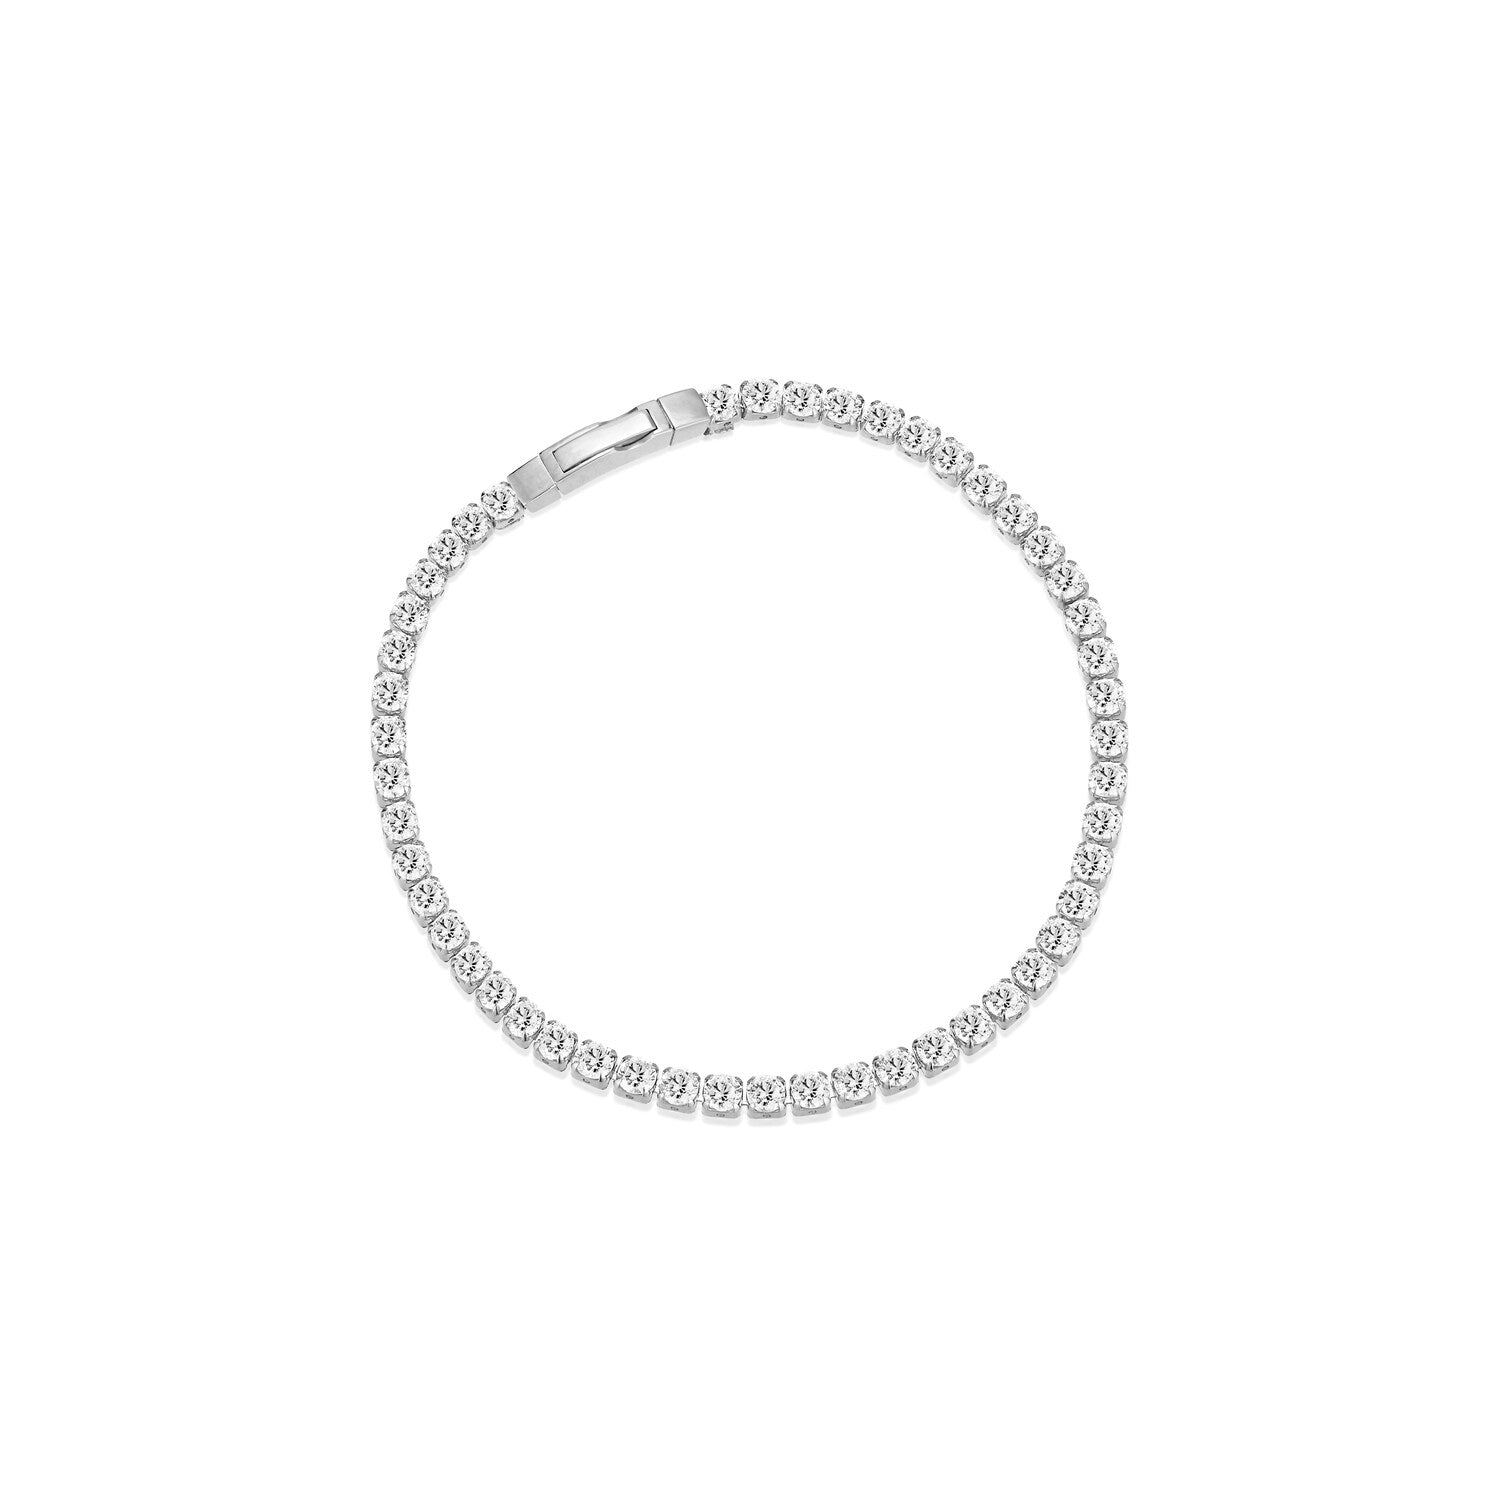 925 sterling sølv | Hvide zirkoner | 19 cm, 925 sterling sølv | Hvide zirkoner | 18 cm, 925 sterling sølv | Hvide zirkoner | 17 cm